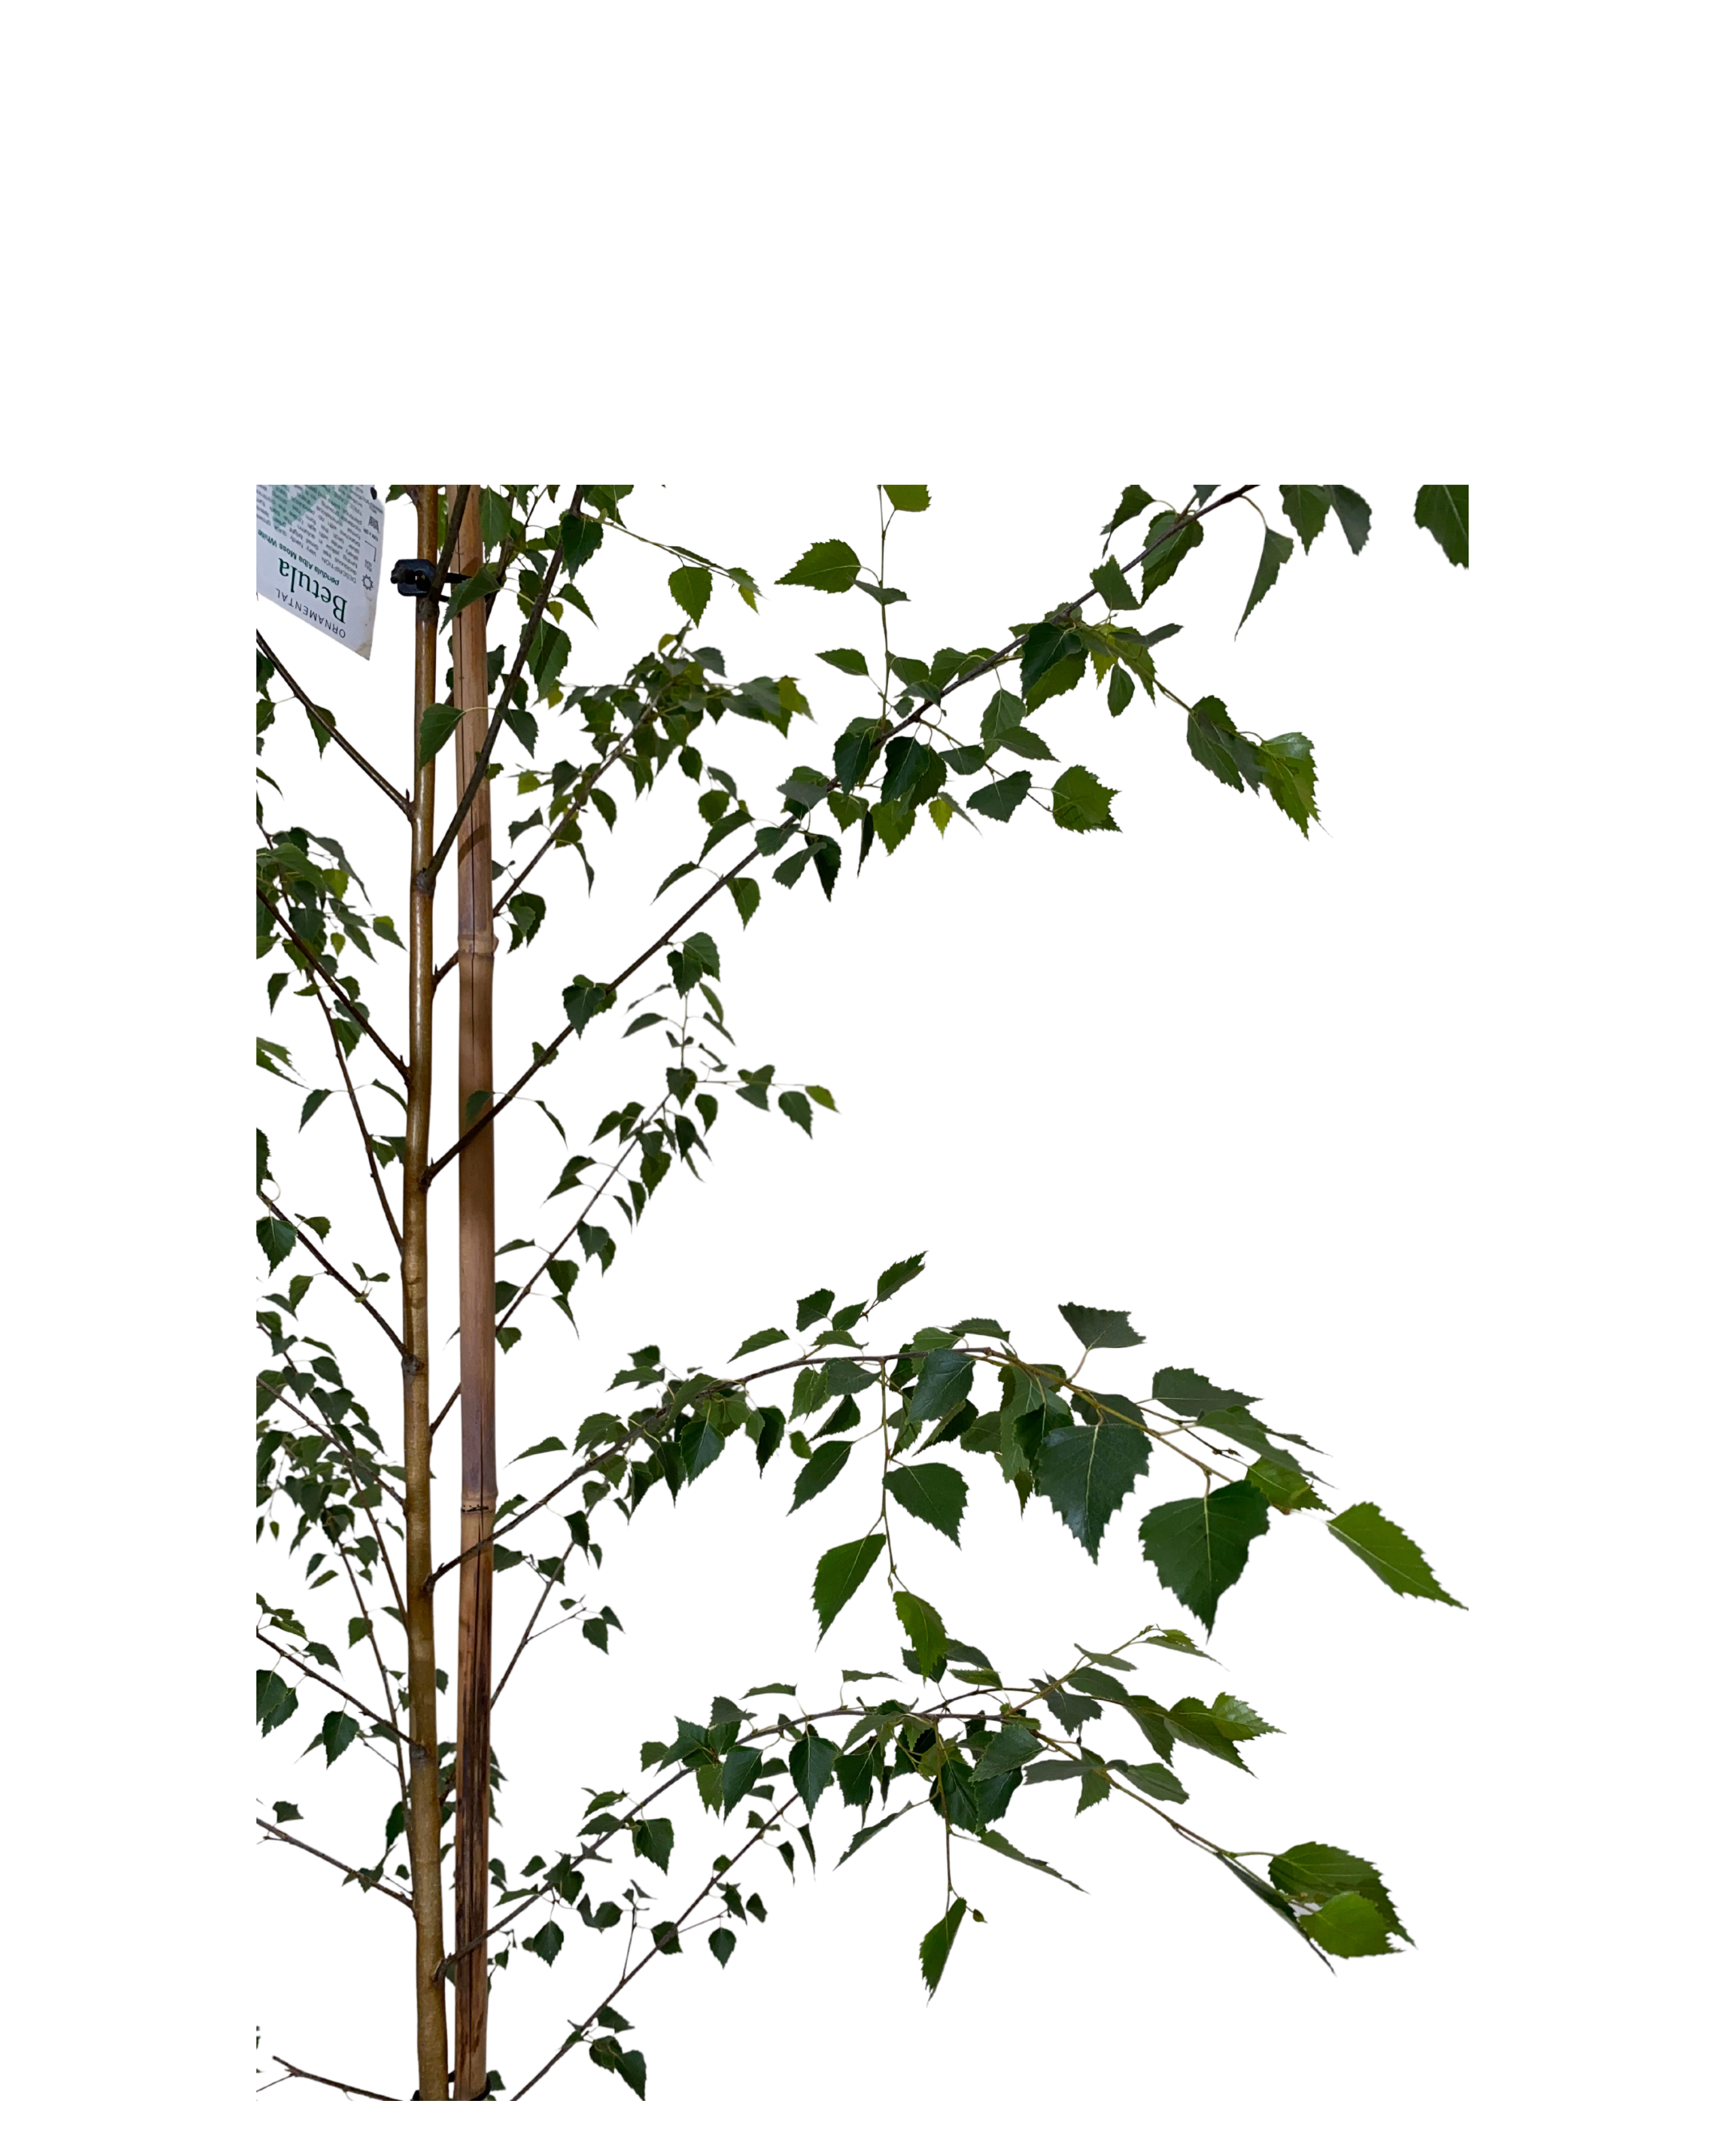 Silver Birch - Betula Pendula Moss White